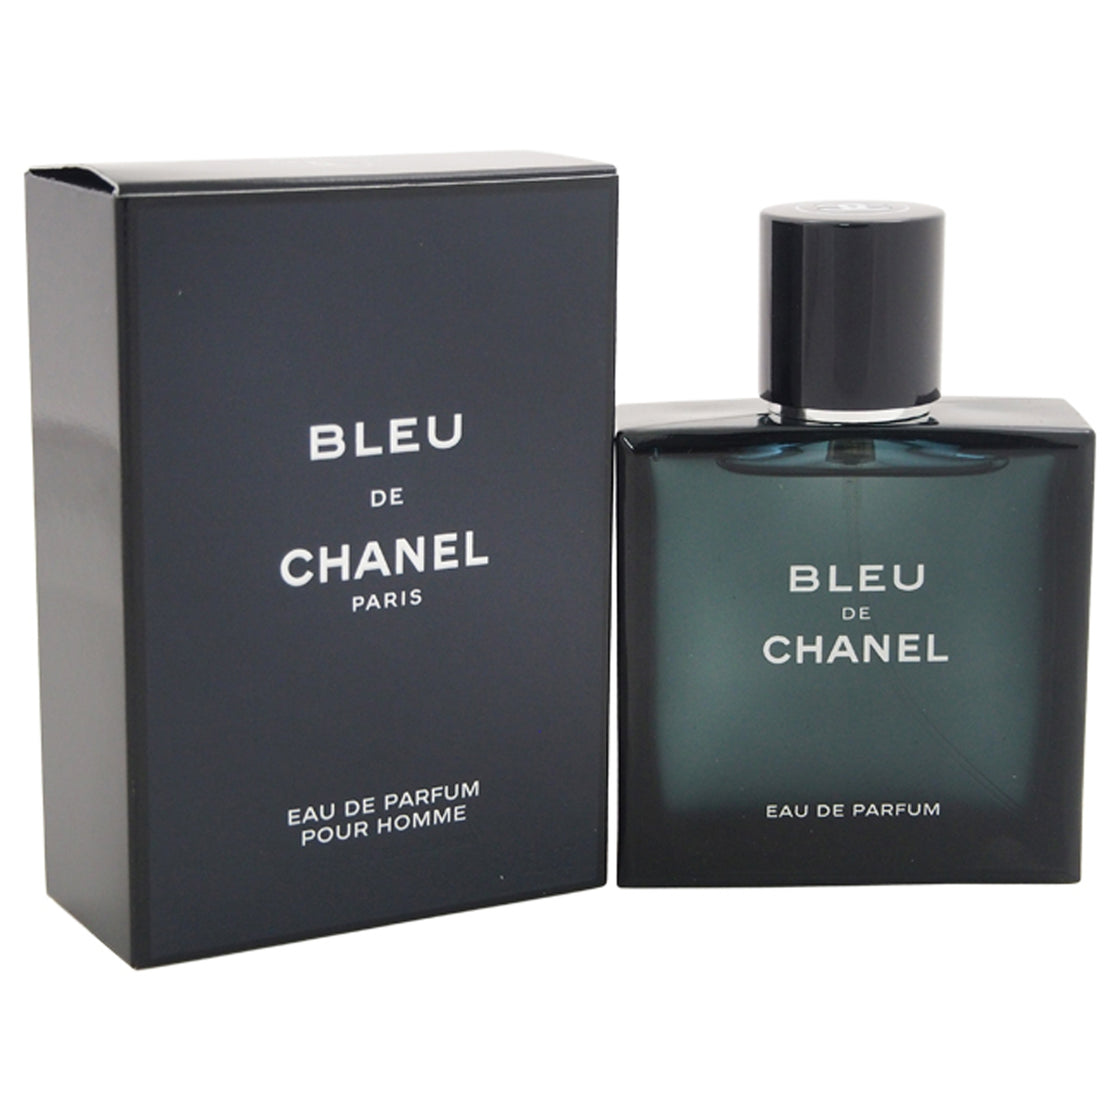 Bleu De Chanel by Chanel for Men - 1.7 oz EDP Spray